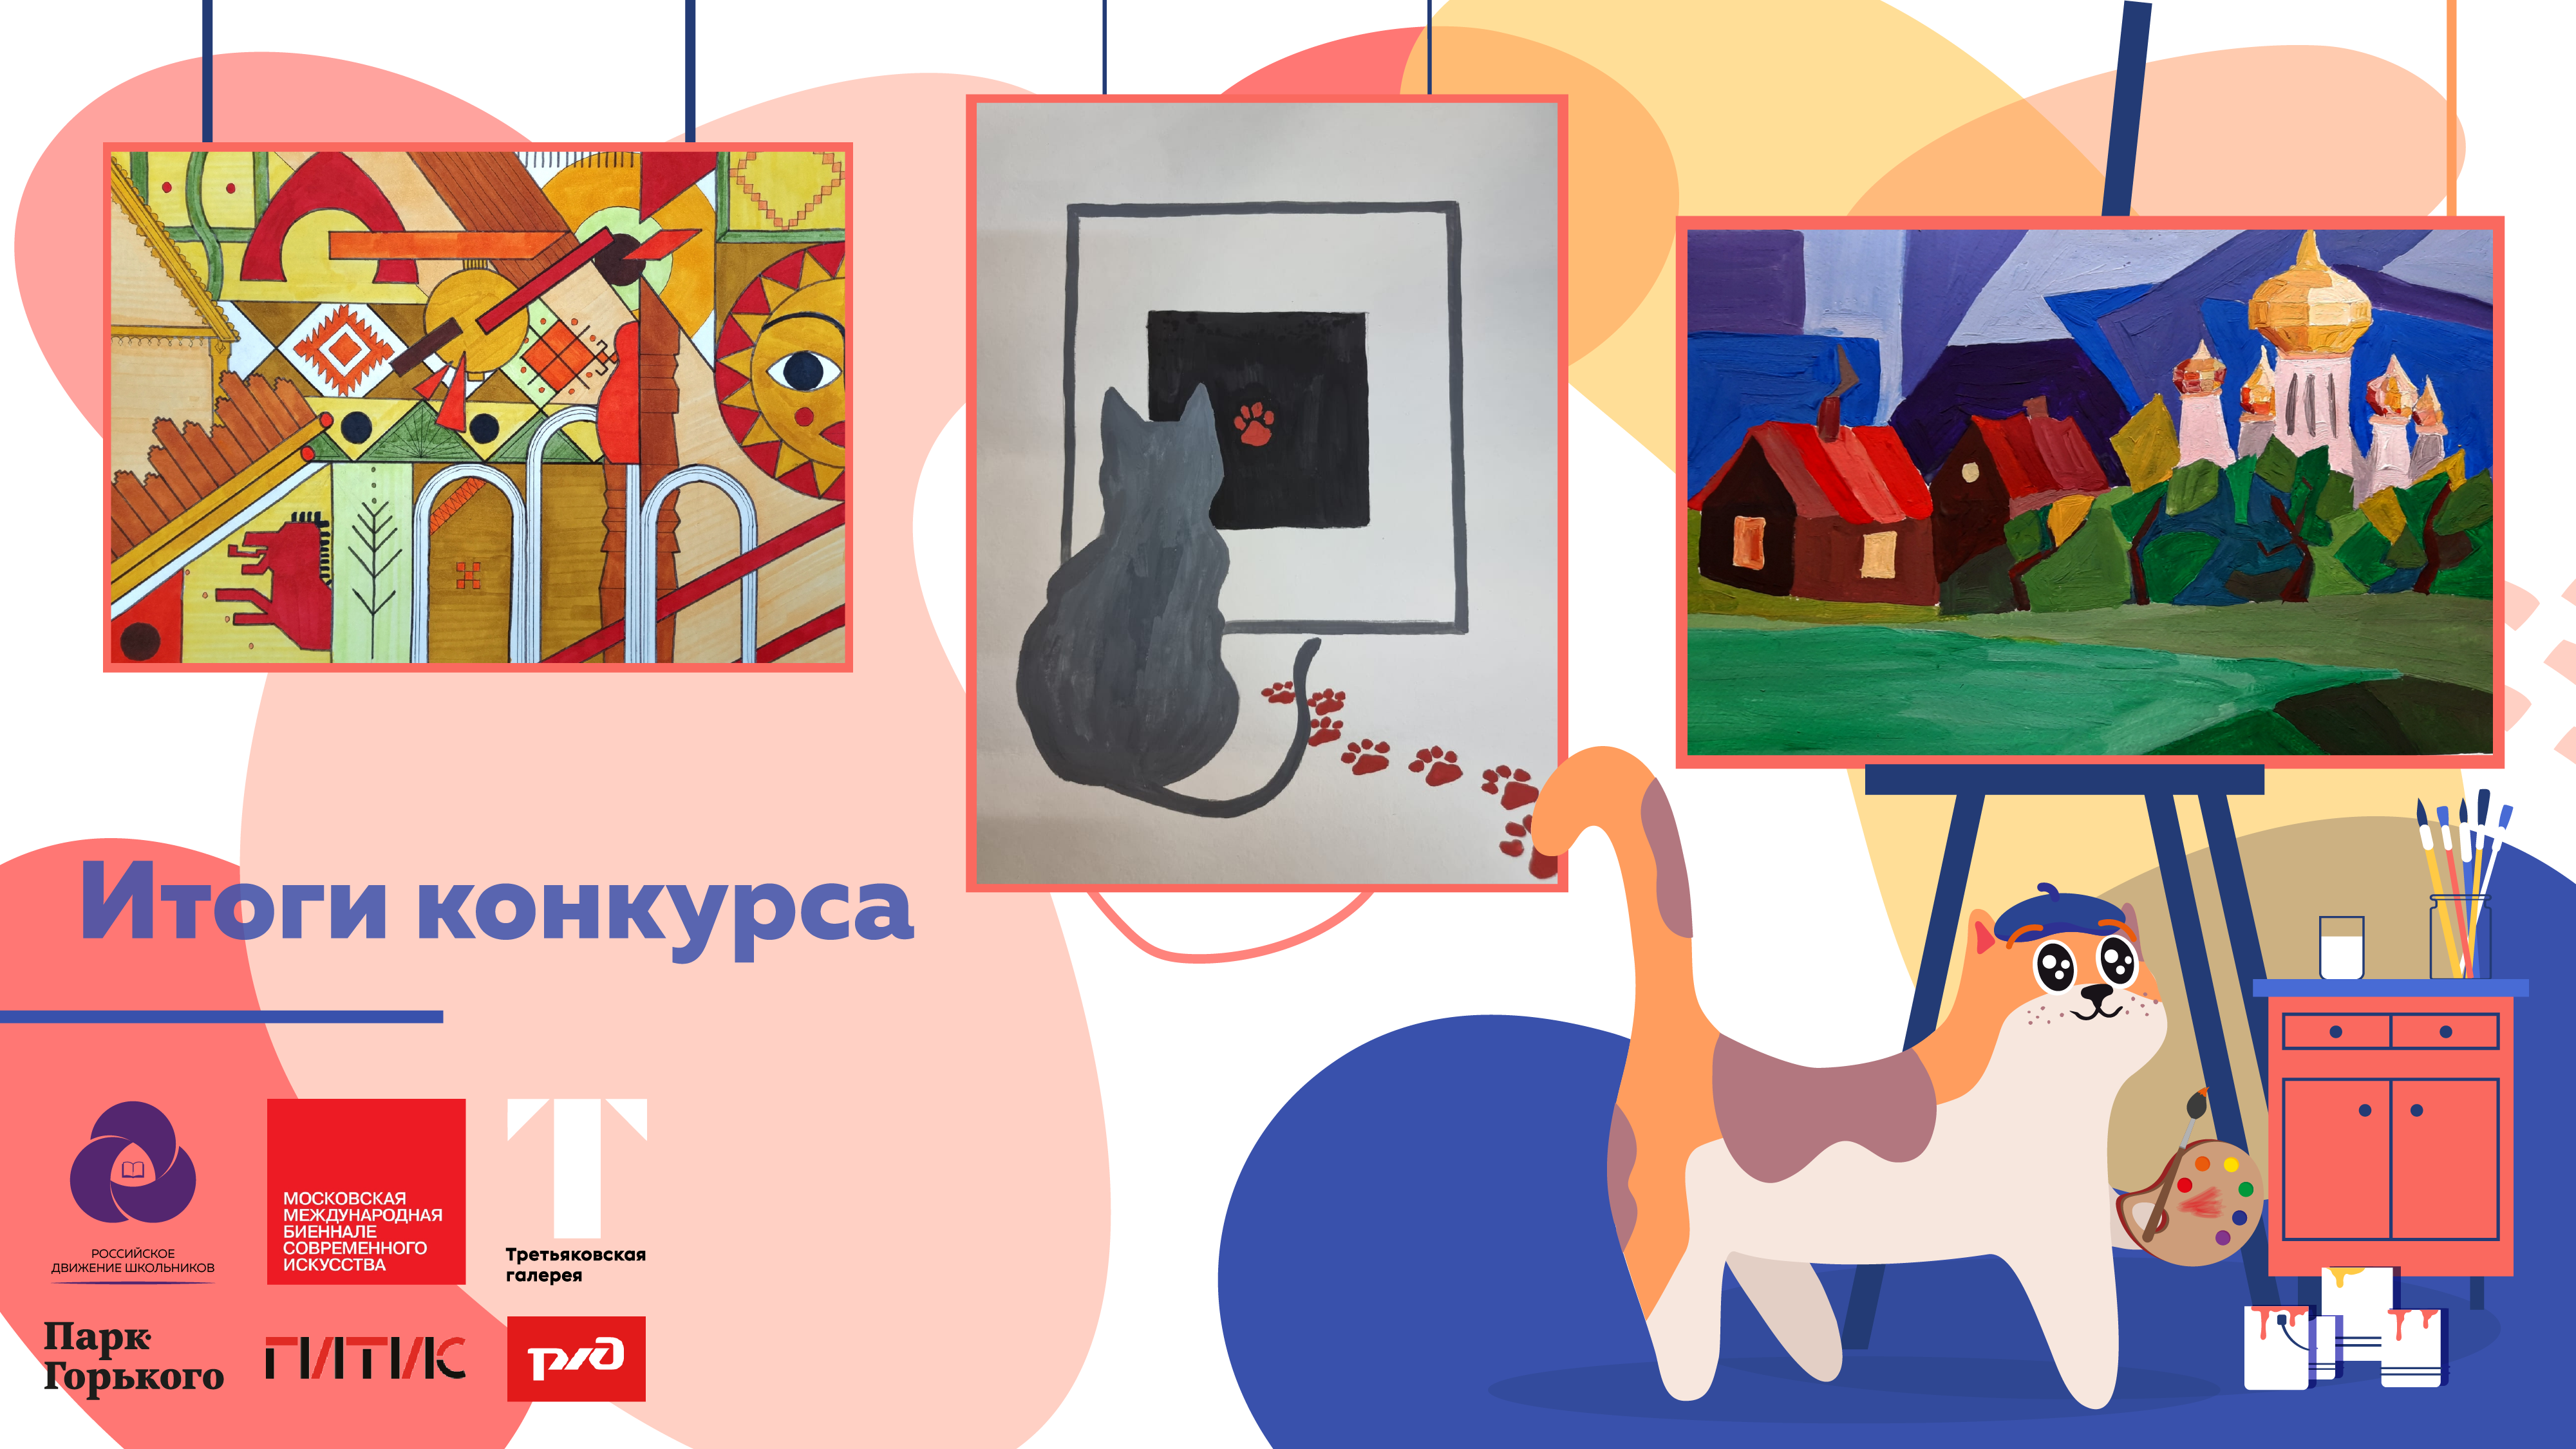 «Культурный кот» выбрал 39 работ для размещения в пространстве Третьяковской галереи